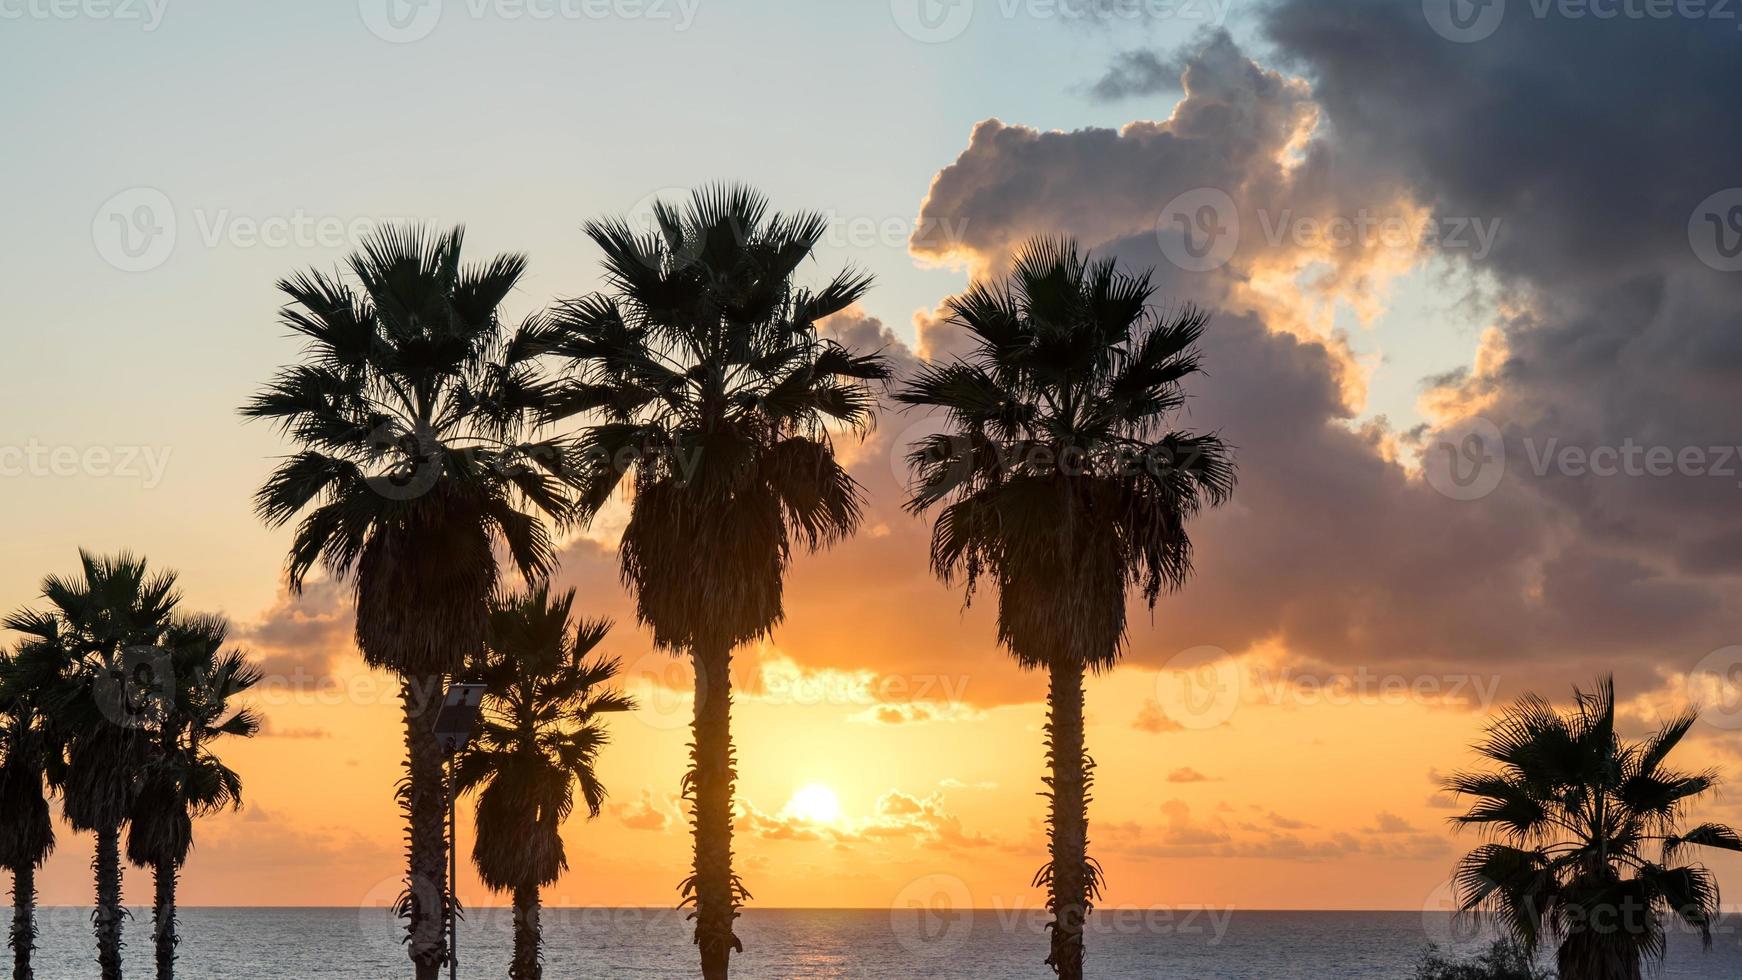 Palme am Strand gegen den bunten Sonnenunterganghimmel mit Wolken. Tel Aviv, Israel. foto